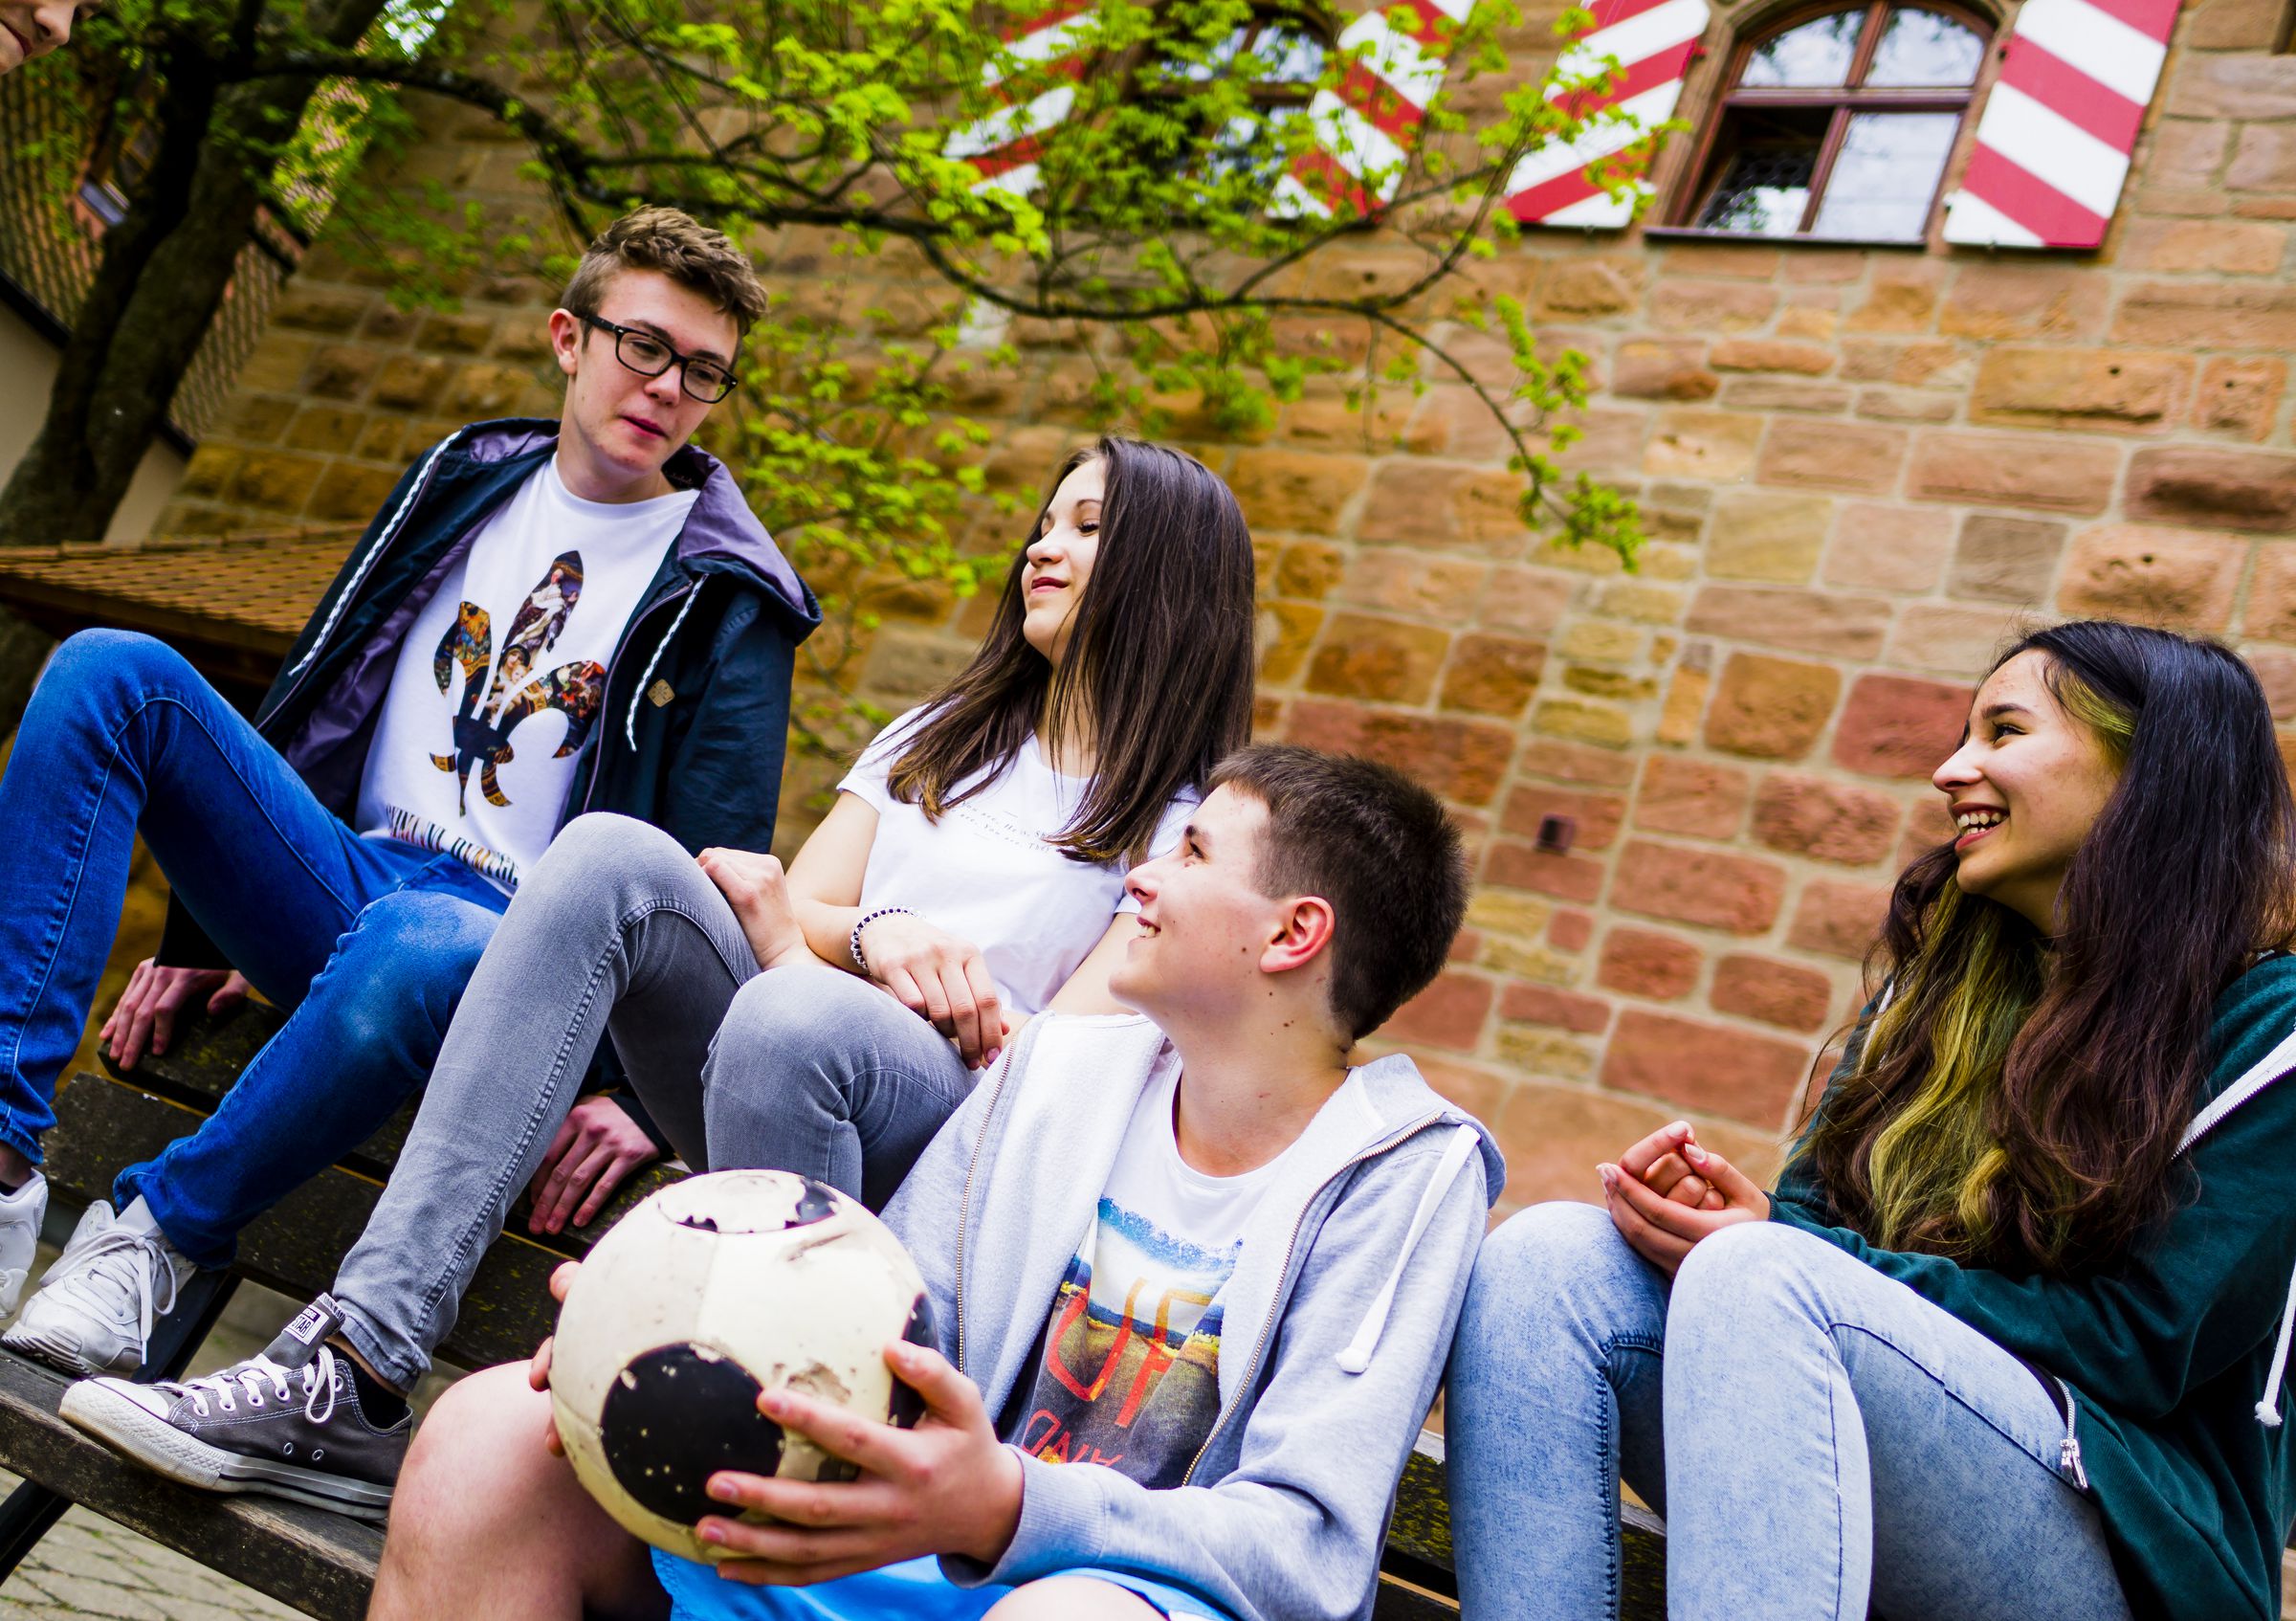 Vier Jugendliche chillen auf einer Bank, einer von ihnen hat einen Fußball in der Hand.